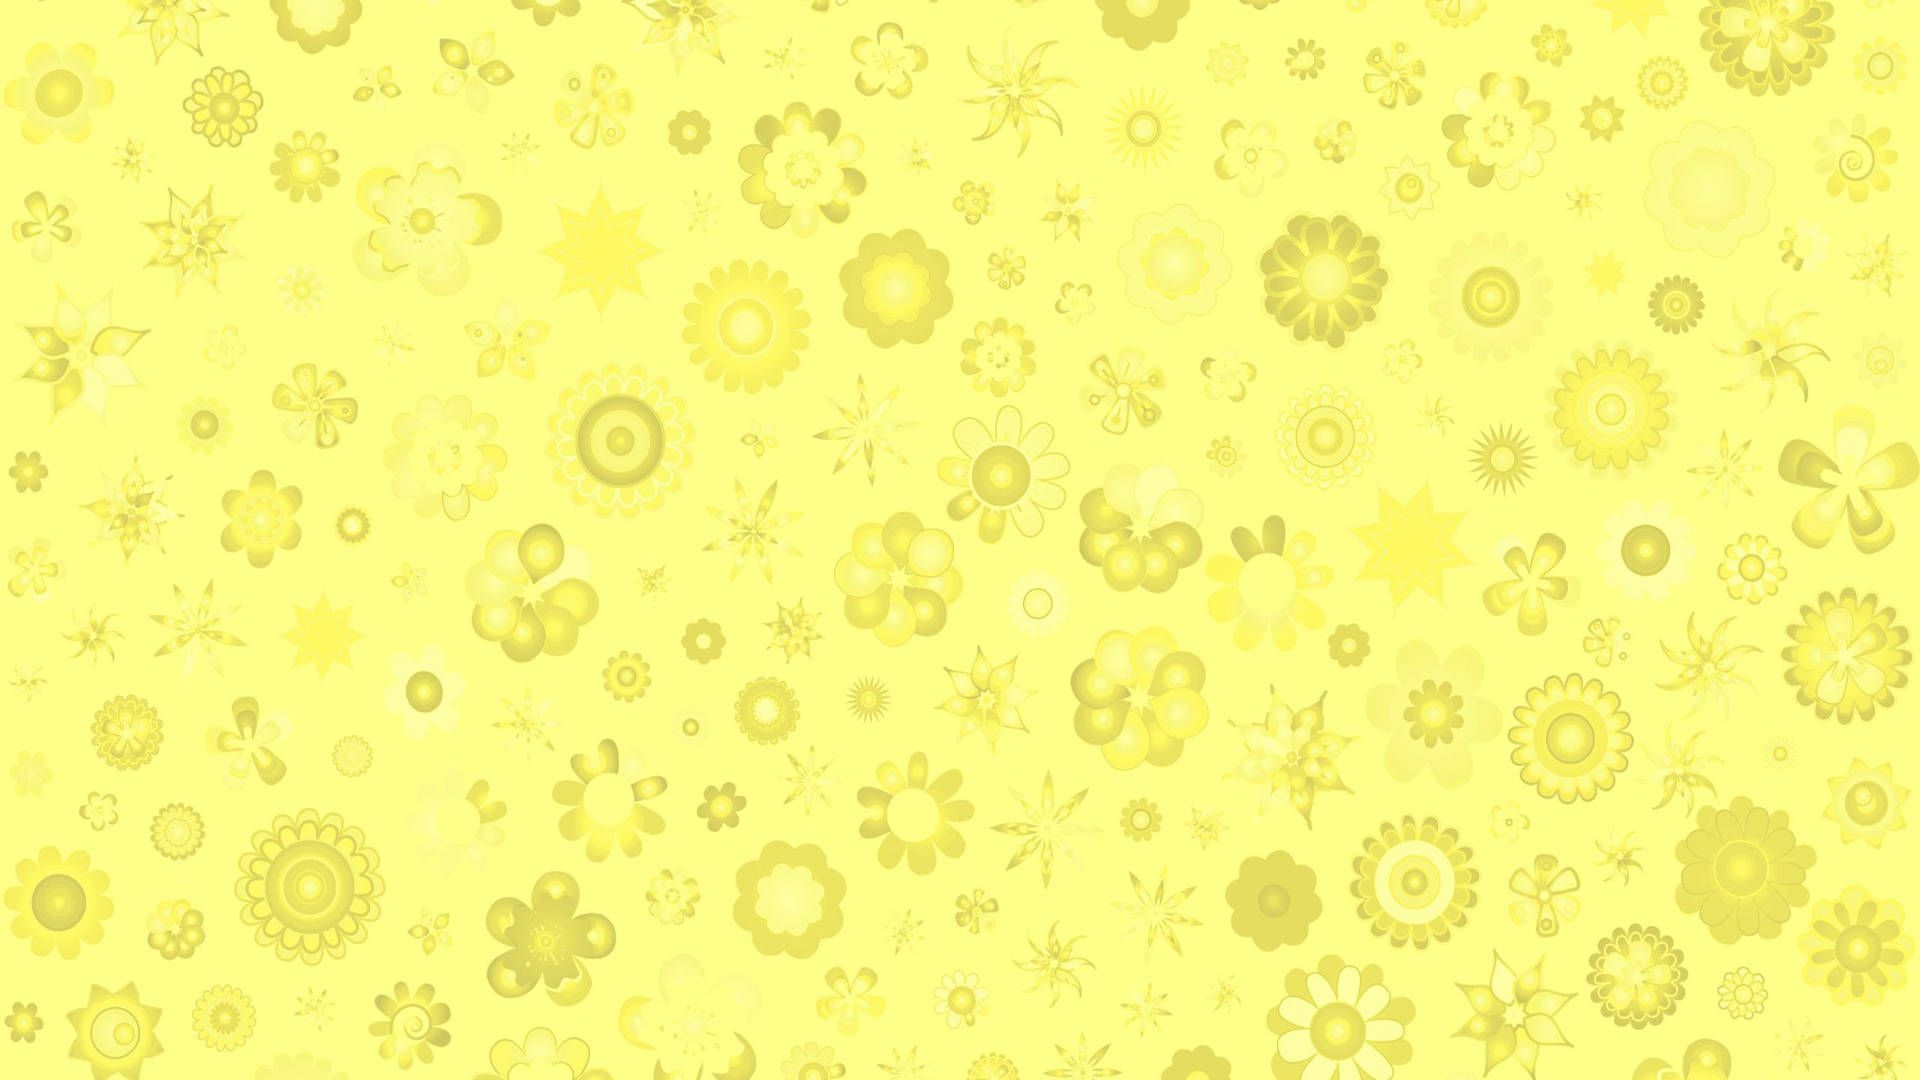 Free Pastel Yellow Wallpaper Downloads, Pastel Yellow Wallpaper for FREE